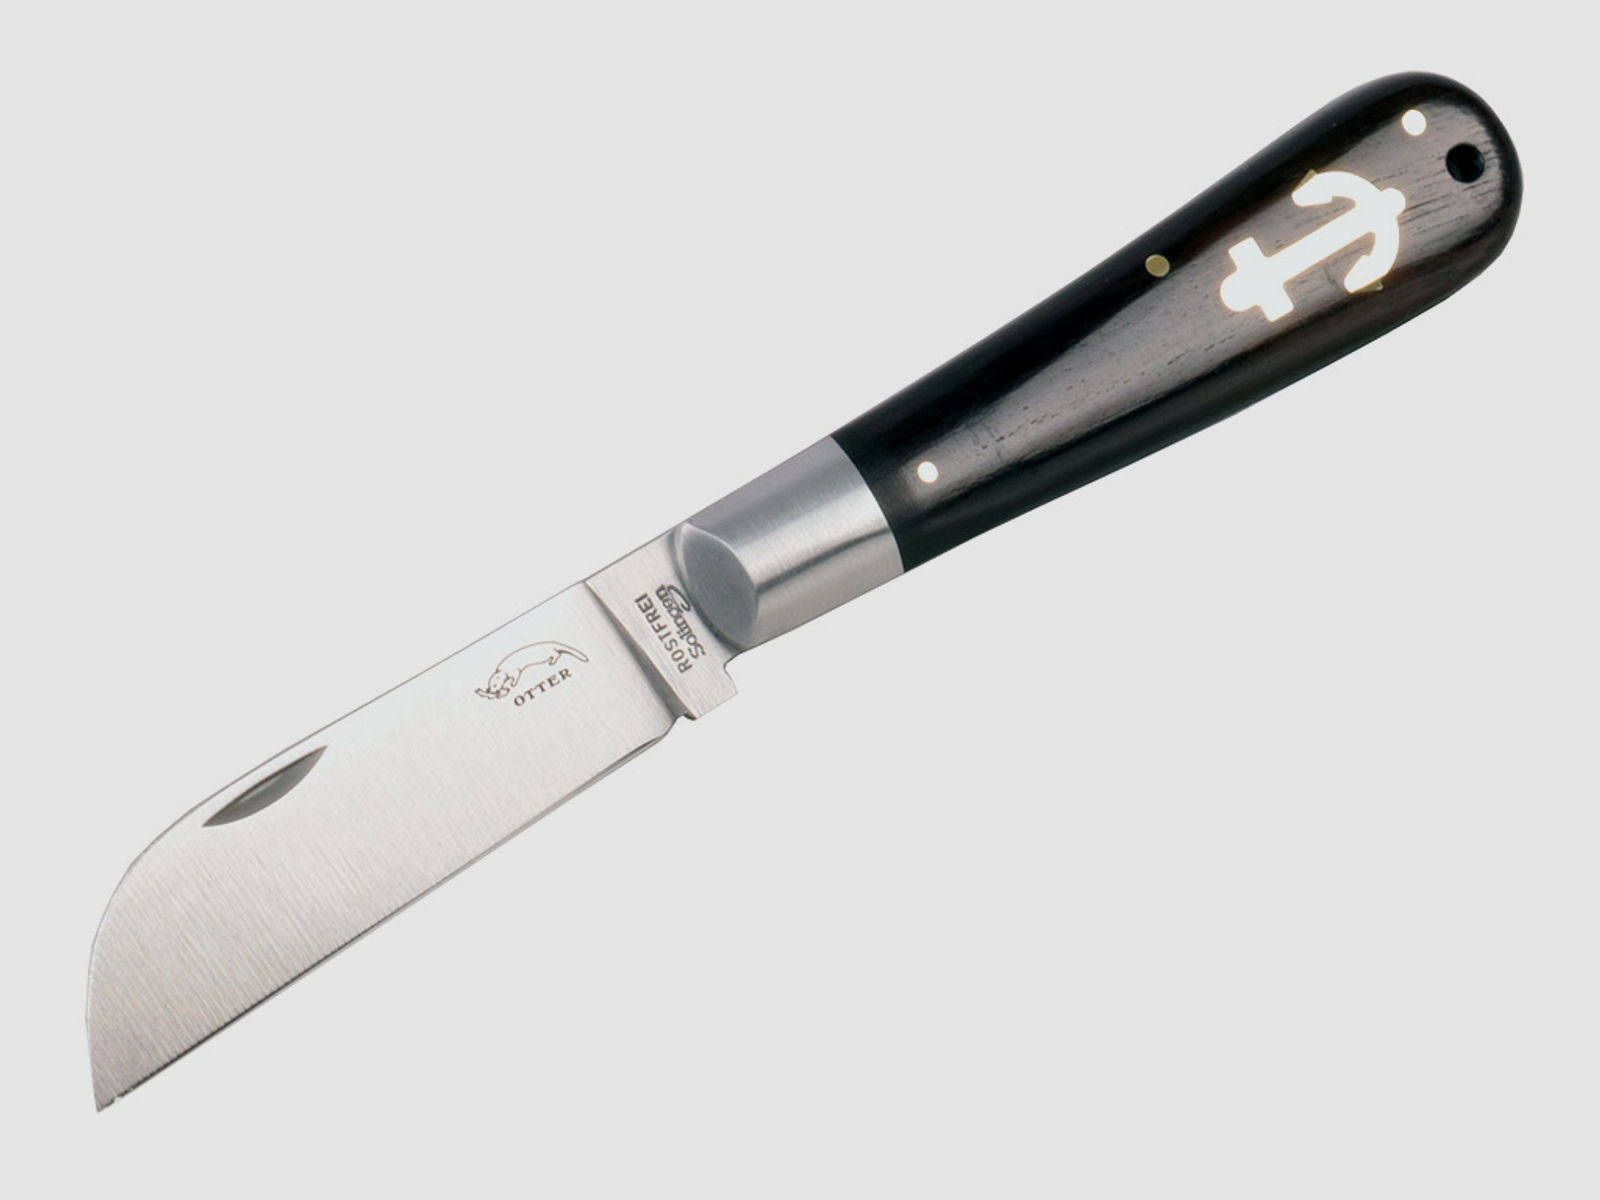 Taschenmesser Otter Ankermesser Grenadill Stahl 1.4034 KlingenlĂ¤nge 8,0 cm Griff Grenadill-Holz